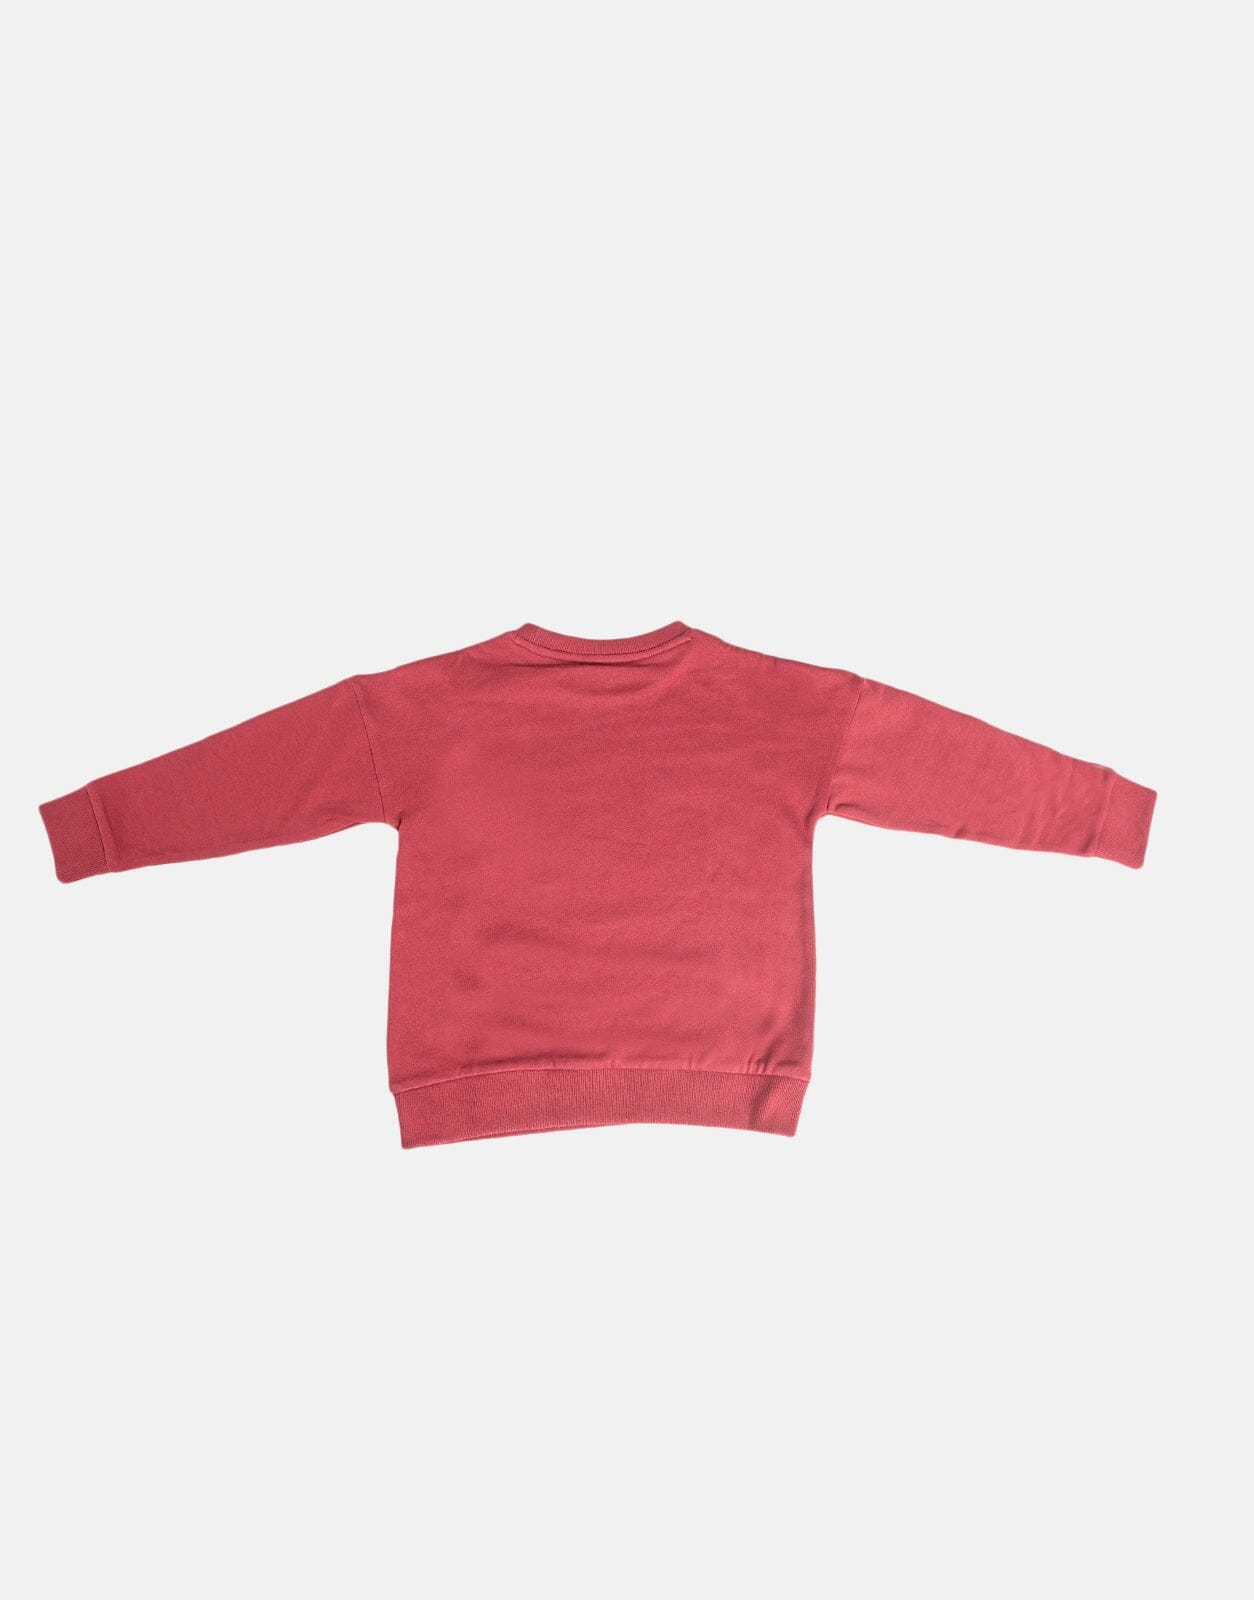 Ben Sherman Kids Target Sweater - Subwear